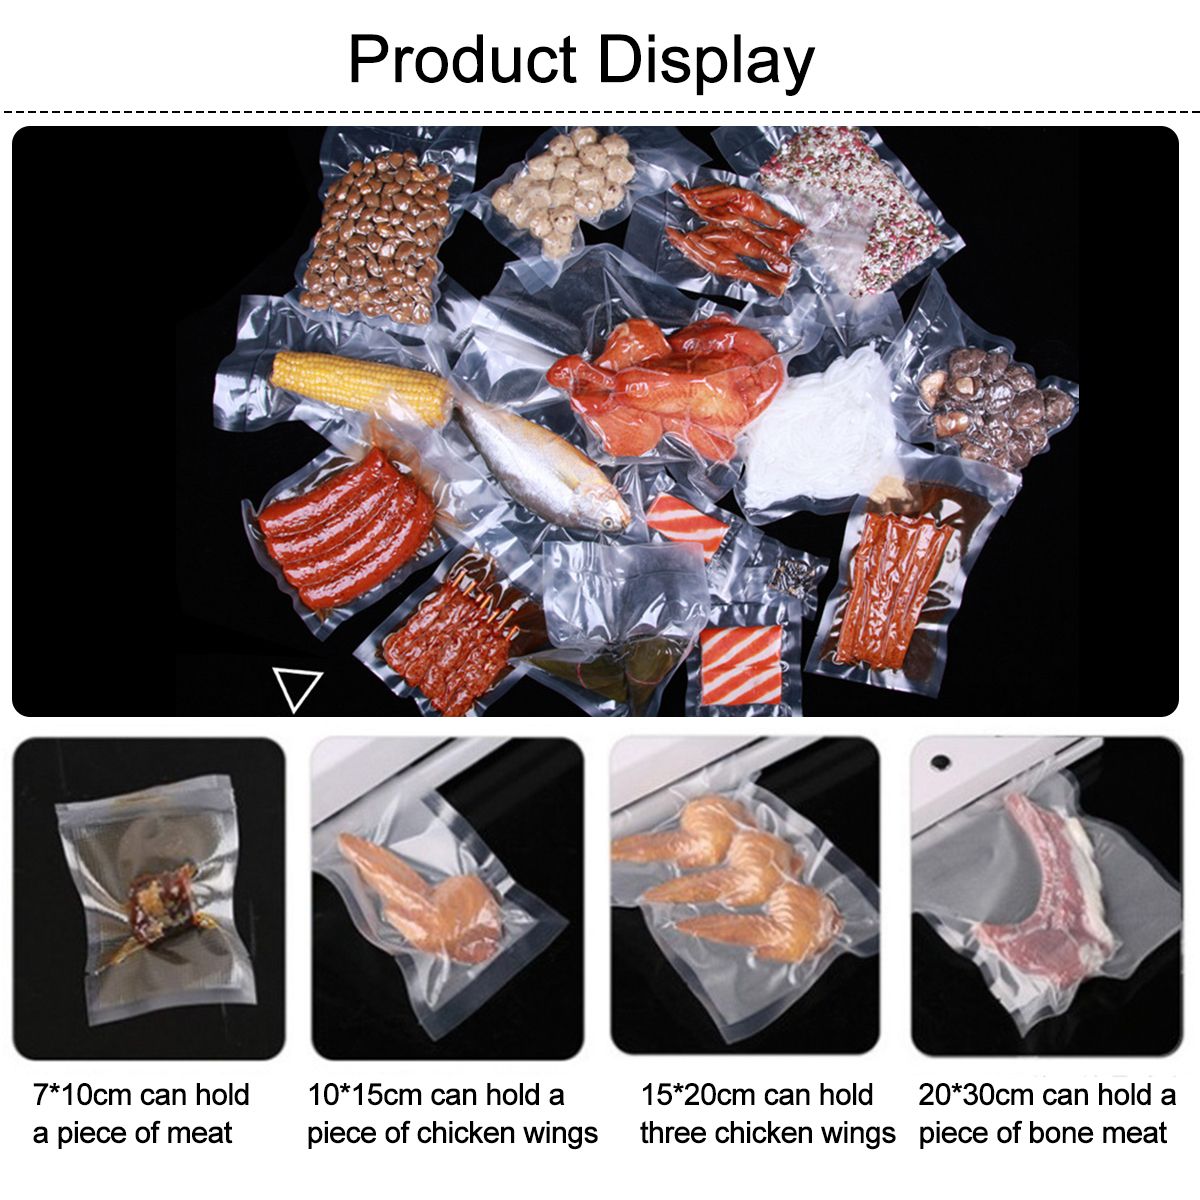 100Pcs-4-Sizes-Food-Grade-Vacuum-Bag-Sealer-Machine-Bags-1664275